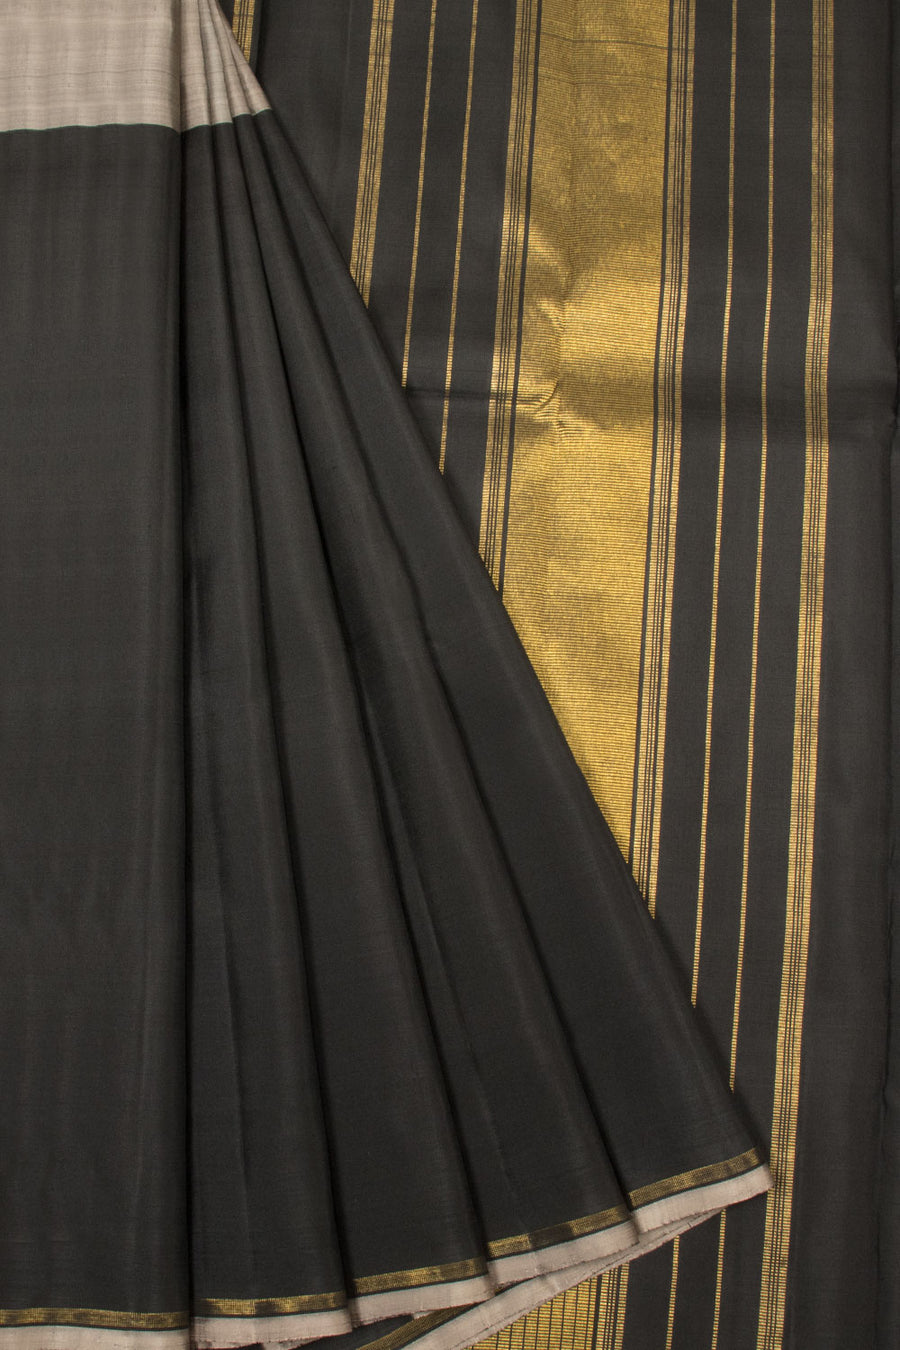 Black And Grey Half And Half Handloom Kanjivaram Silk Saree - Avishya